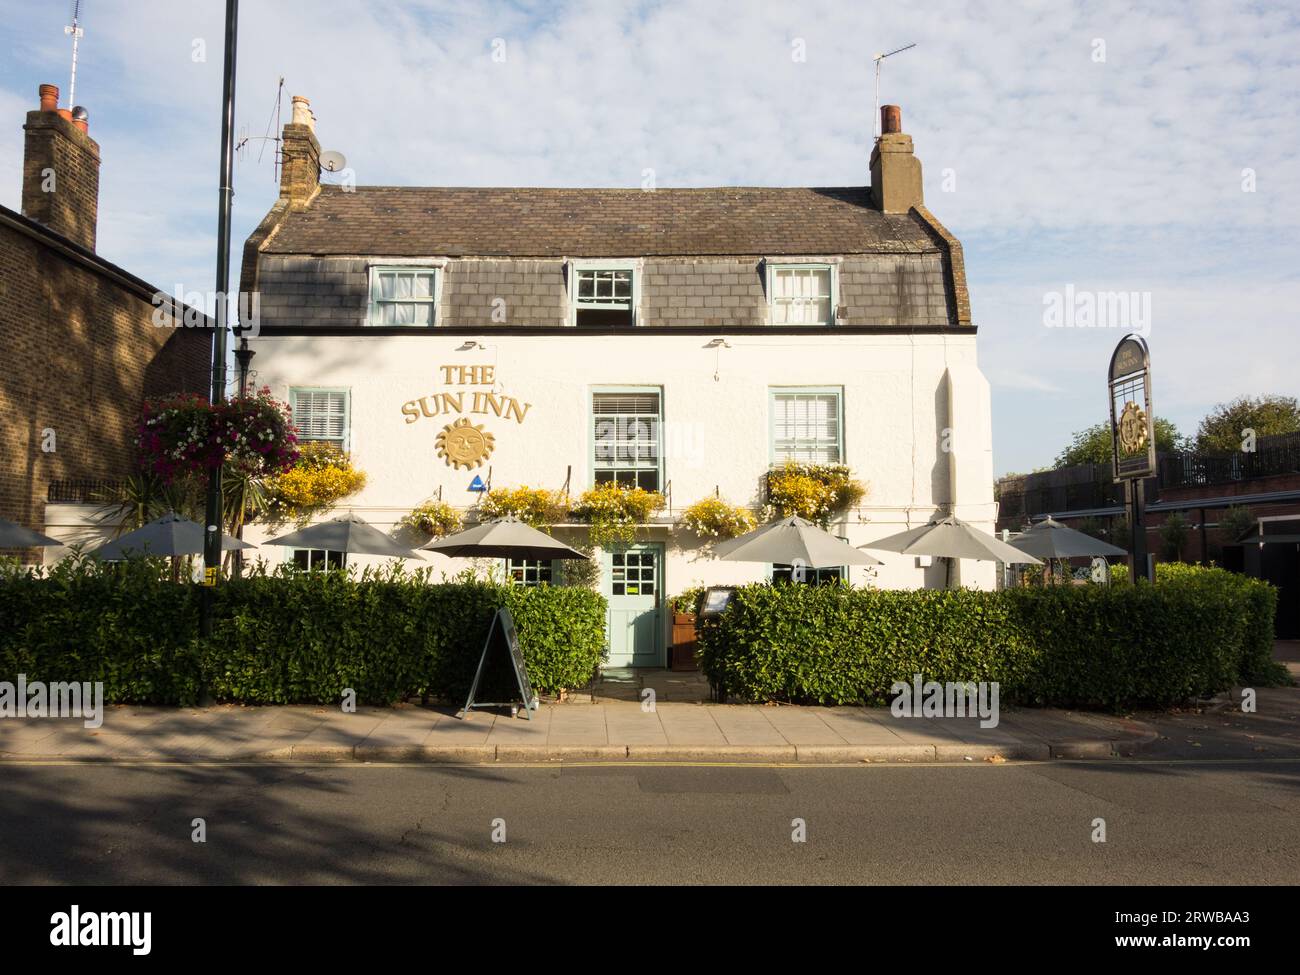 The Sun Inn public house, Barnes, London, SW13, England, UK Stock Photo